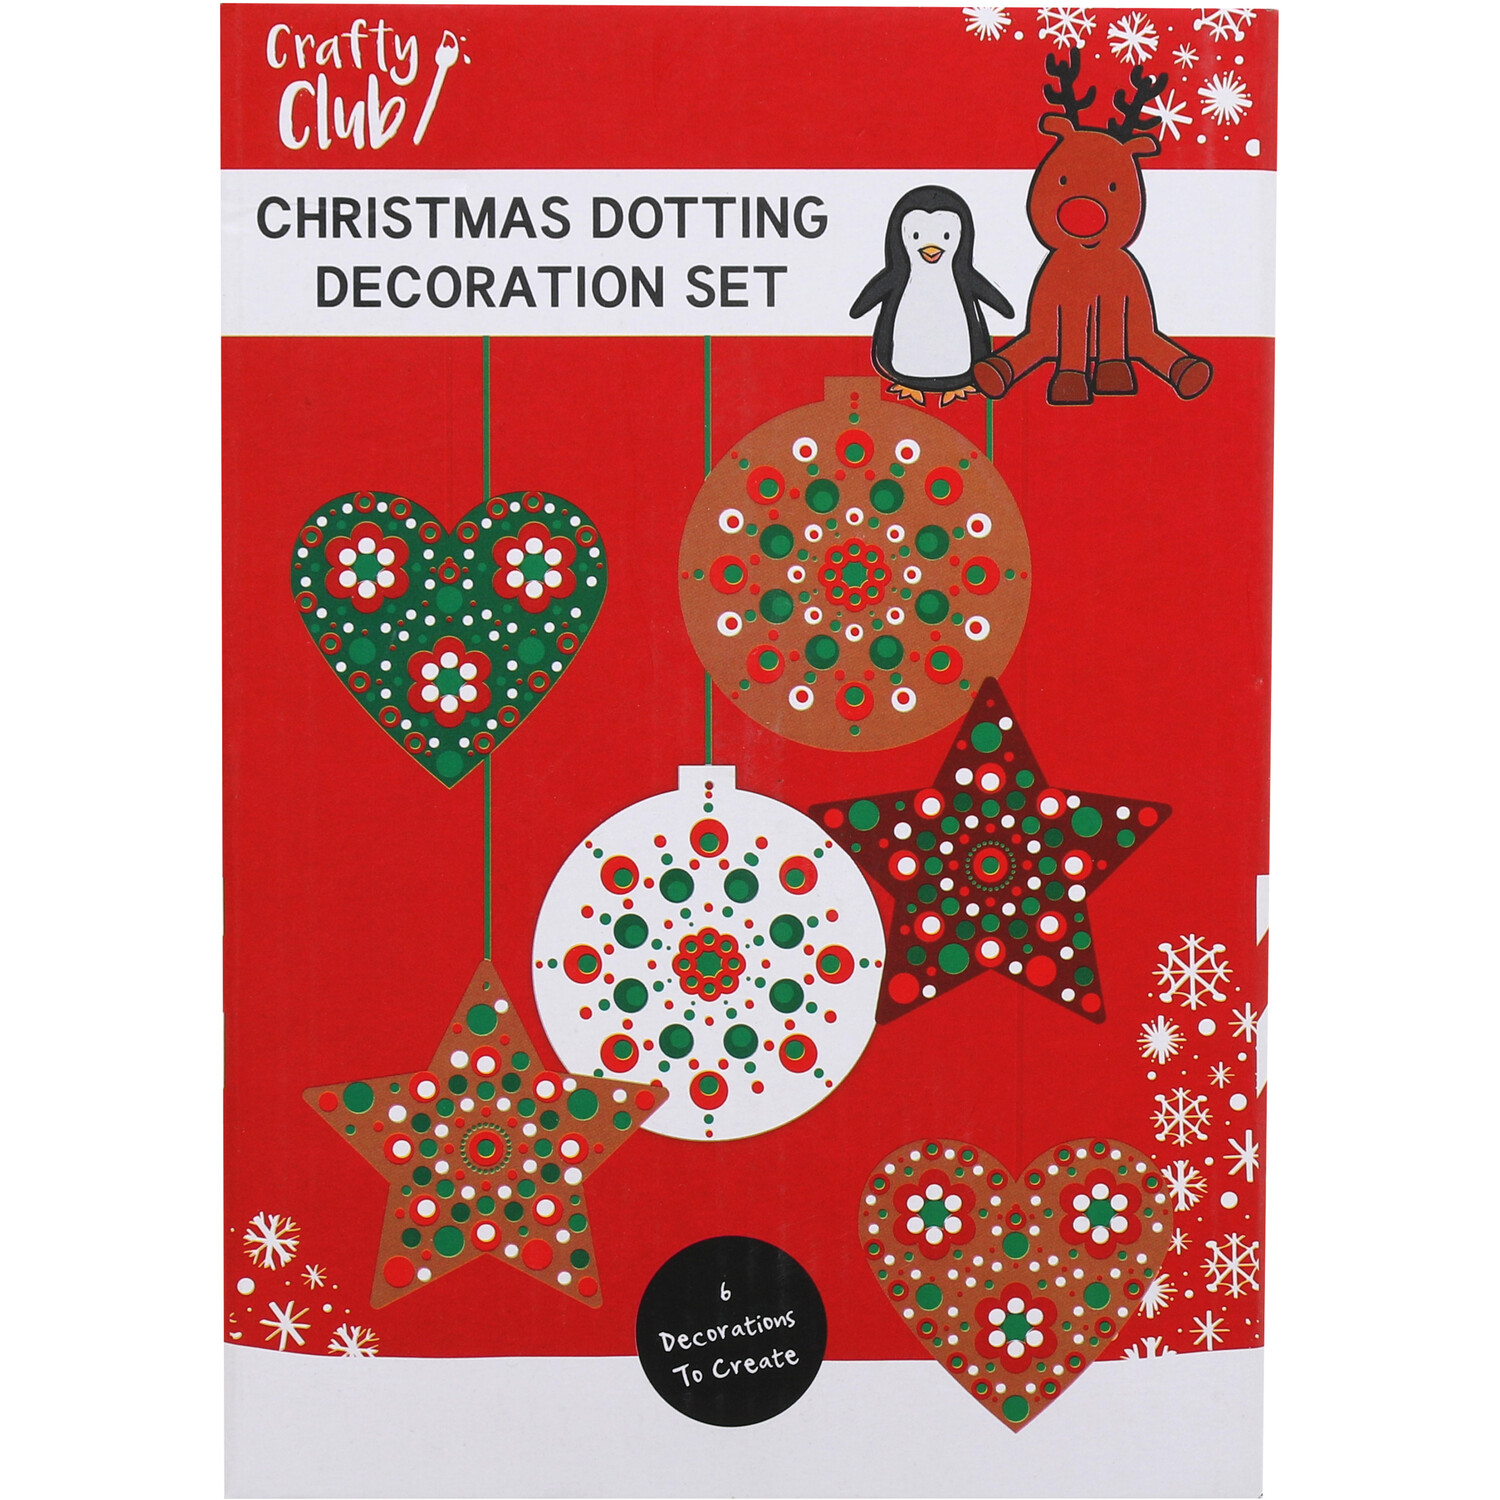 Christmas Dotting Decoration Set Image